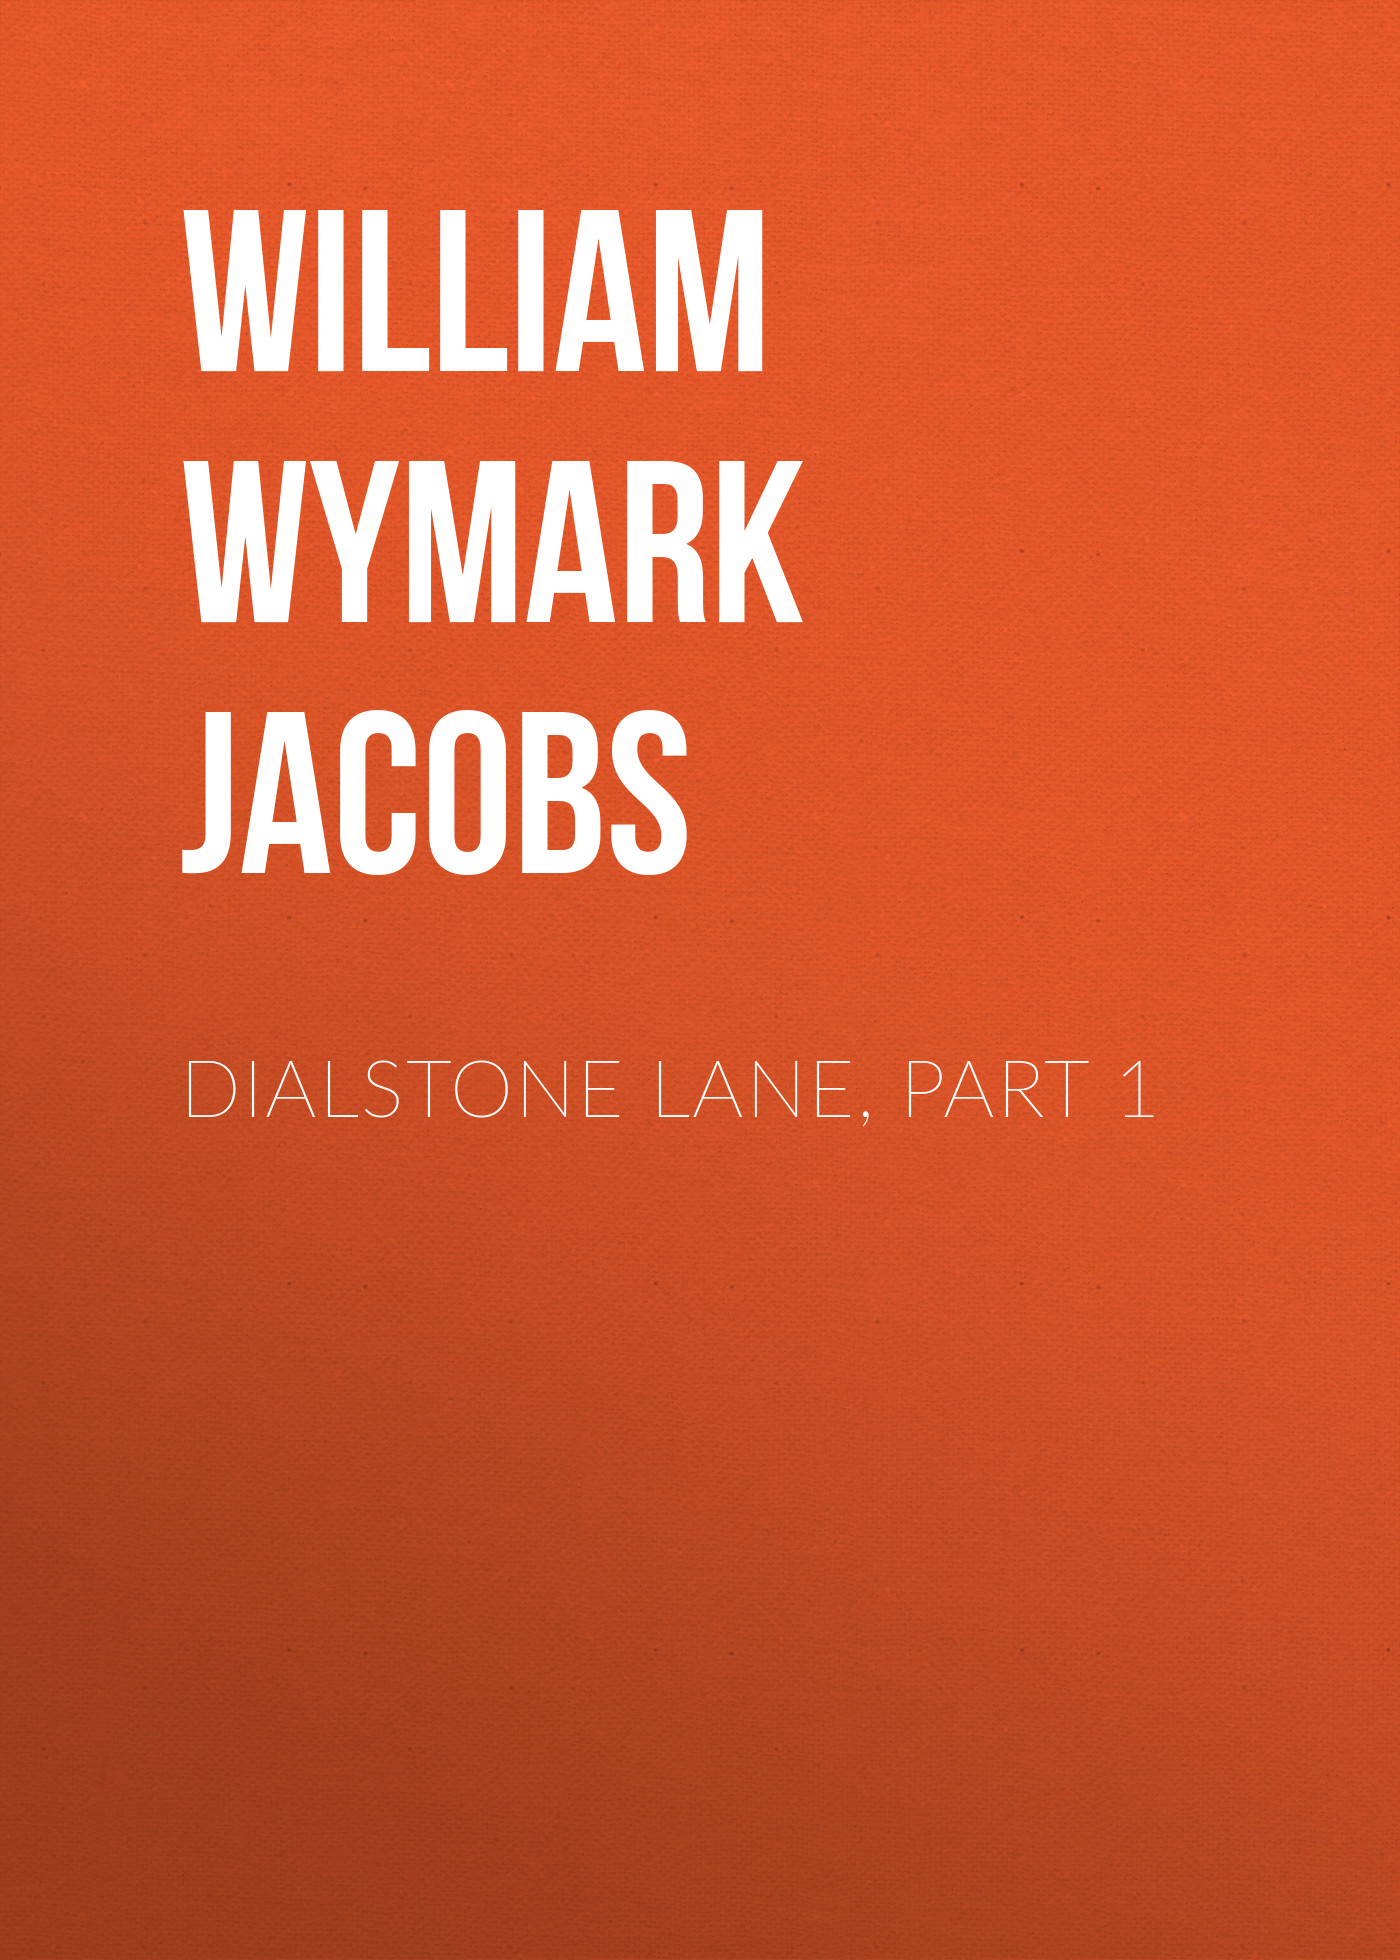 Книга Dialstone Lane, Part 1 из серии , созданная William Wymark Jacobs, может относится к жанру Книги о Путешествиях, Зарубежная старинная литература, Зарубежная классика. Стоимость электронной книги Dialstone Lane, Part 1 с идентификатором 34844246 составляет 0 руб.